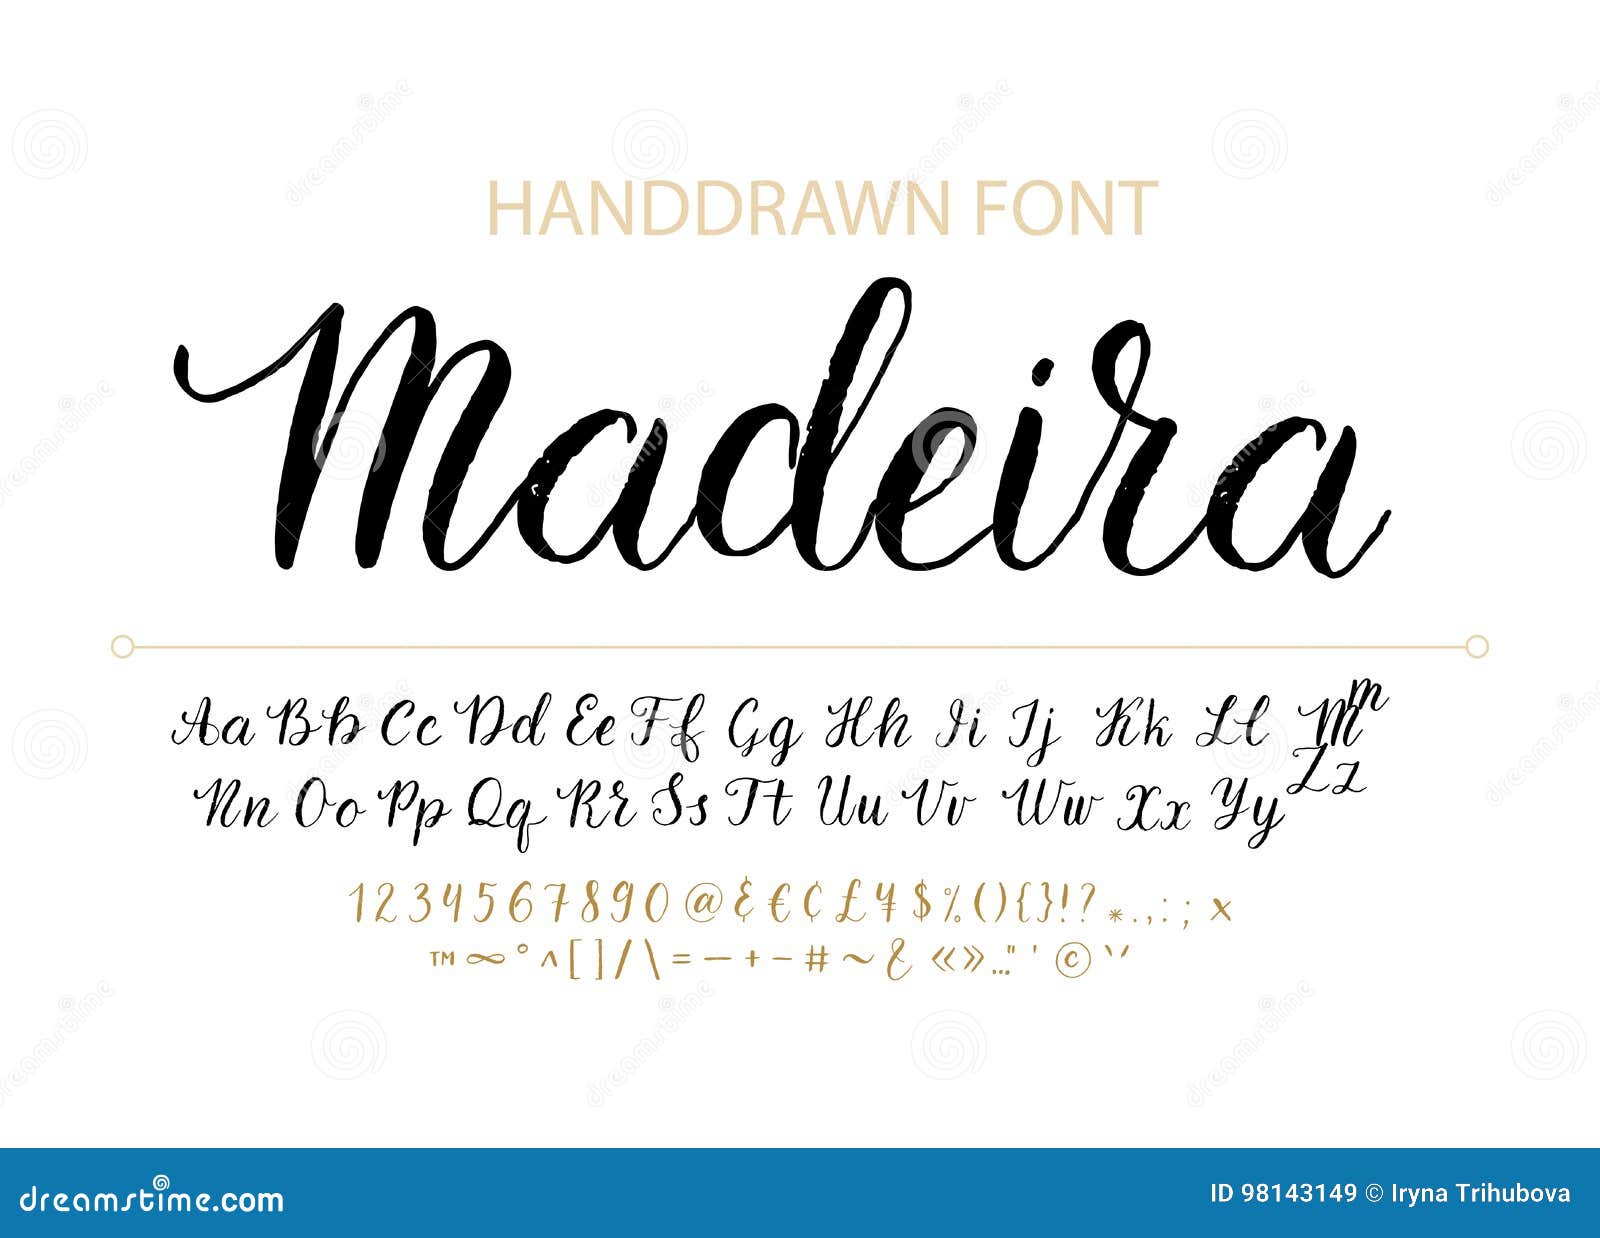 Với Handdrawn Vector Script Font textured, bạn sẽ được trải nghiệm với phông chữ brush style calligraphy độc đáo và mới lạ trên Instagram. Những chiếc chữ sẽ trở nên sinh động hơn, tượng trưng hơn và gây ấn tượng mạnh hơn với những người xem của bạn.